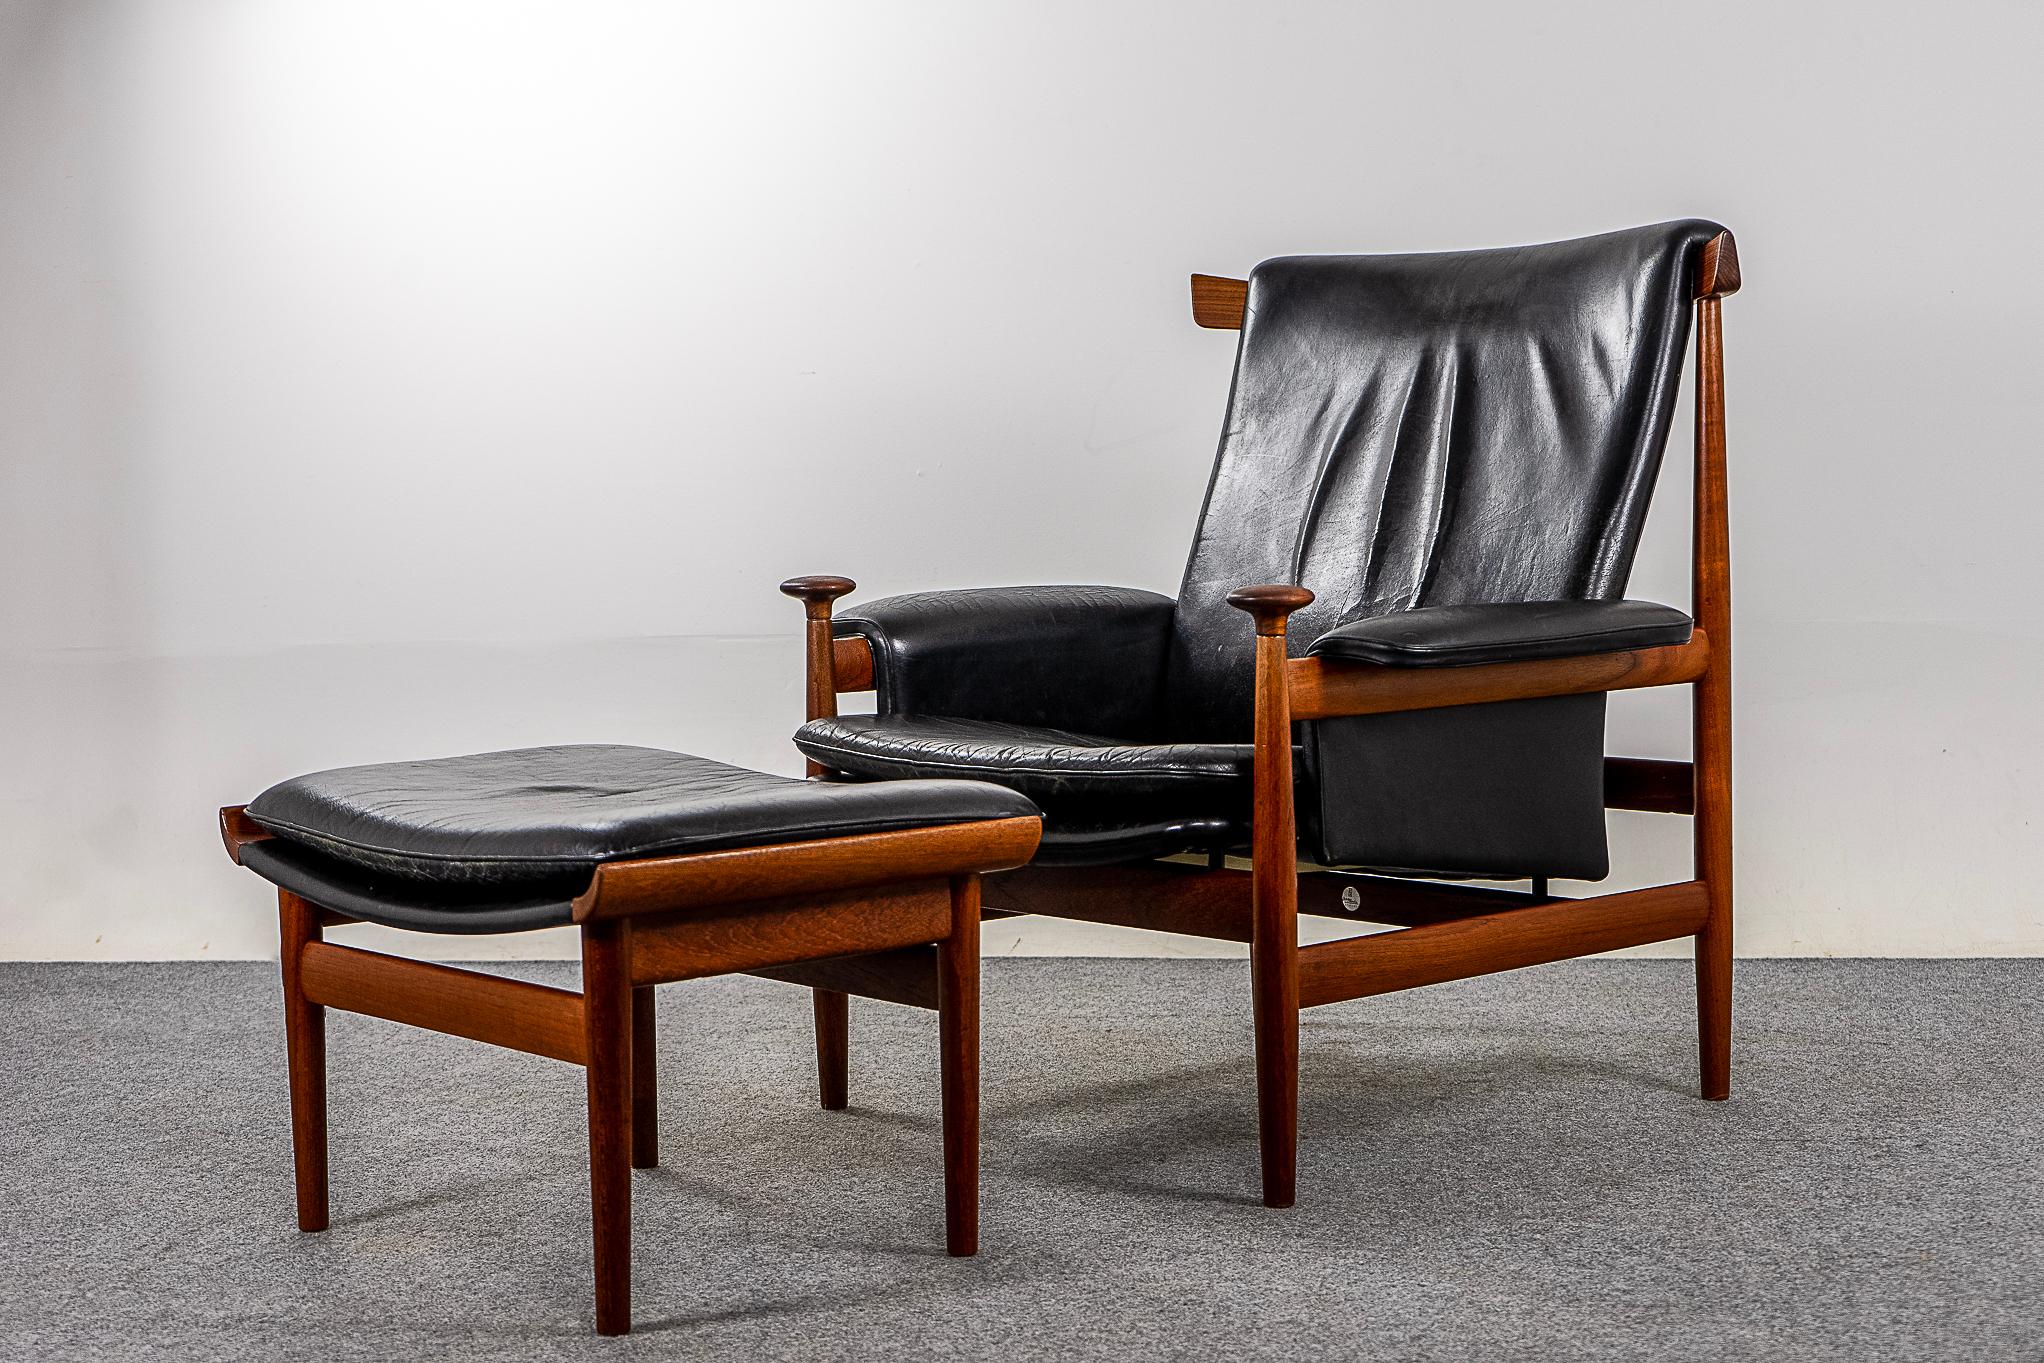 Chaise longue et pouf Bwana Model 152 en teck et cuir par Finn Juhl pour France & Son, circa 1960's. La chaise longue iconique présente un design incurvé saisissant avec une assise flottante et des accoudoirs à pommeau distinctifs. Ses proportions